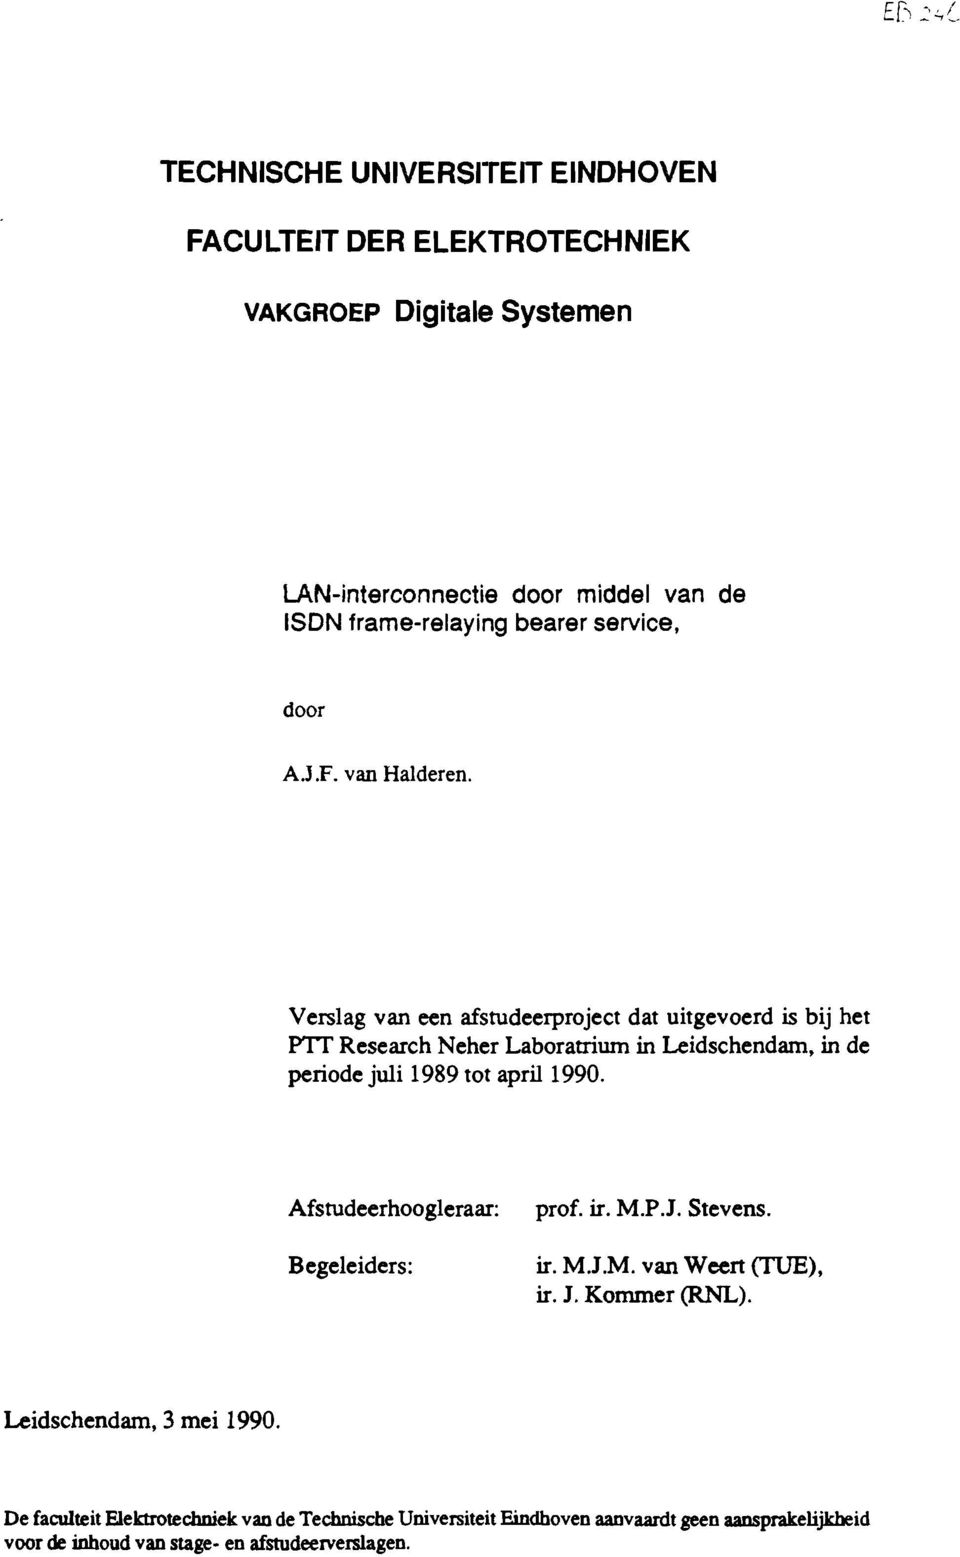 Verslag van een afstudeerproject dat uitgevoerd is bij het PTr Research Neher Laboratriwn in Leidschendam, in de periode juli 1989 tot april 1990.